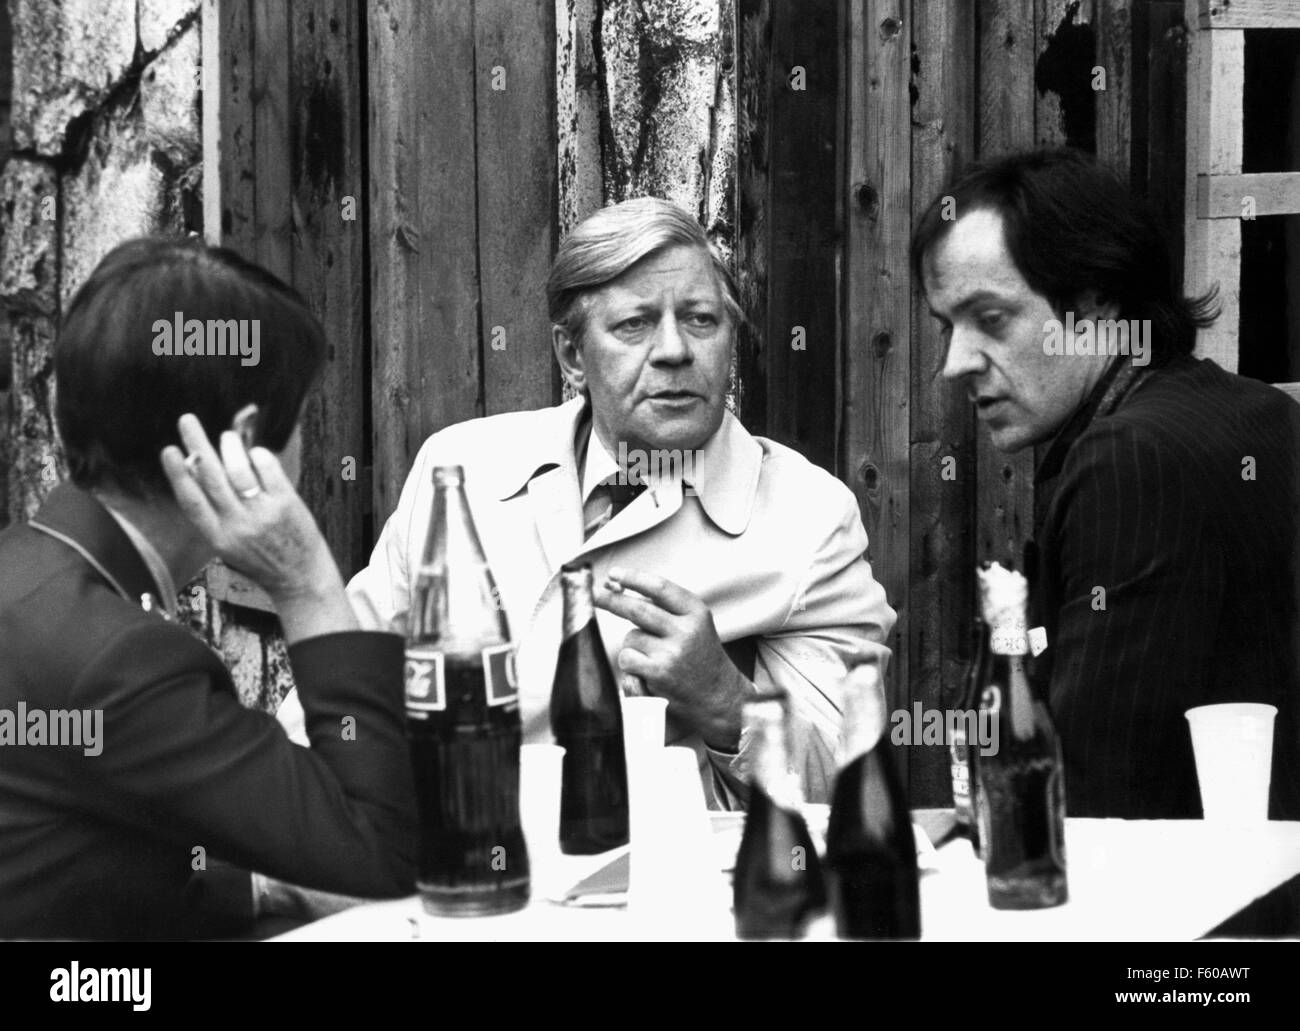 Il cancelliere tedesco Helmut Schmidt (centro) e musicista rock Udo Lindenberg (R) si incontrano in Bad Segeberg il 31 maggio 1980 per lo scambio di opinioni. Schmidt la moglie Loki sulla sinistra. Foto Stock